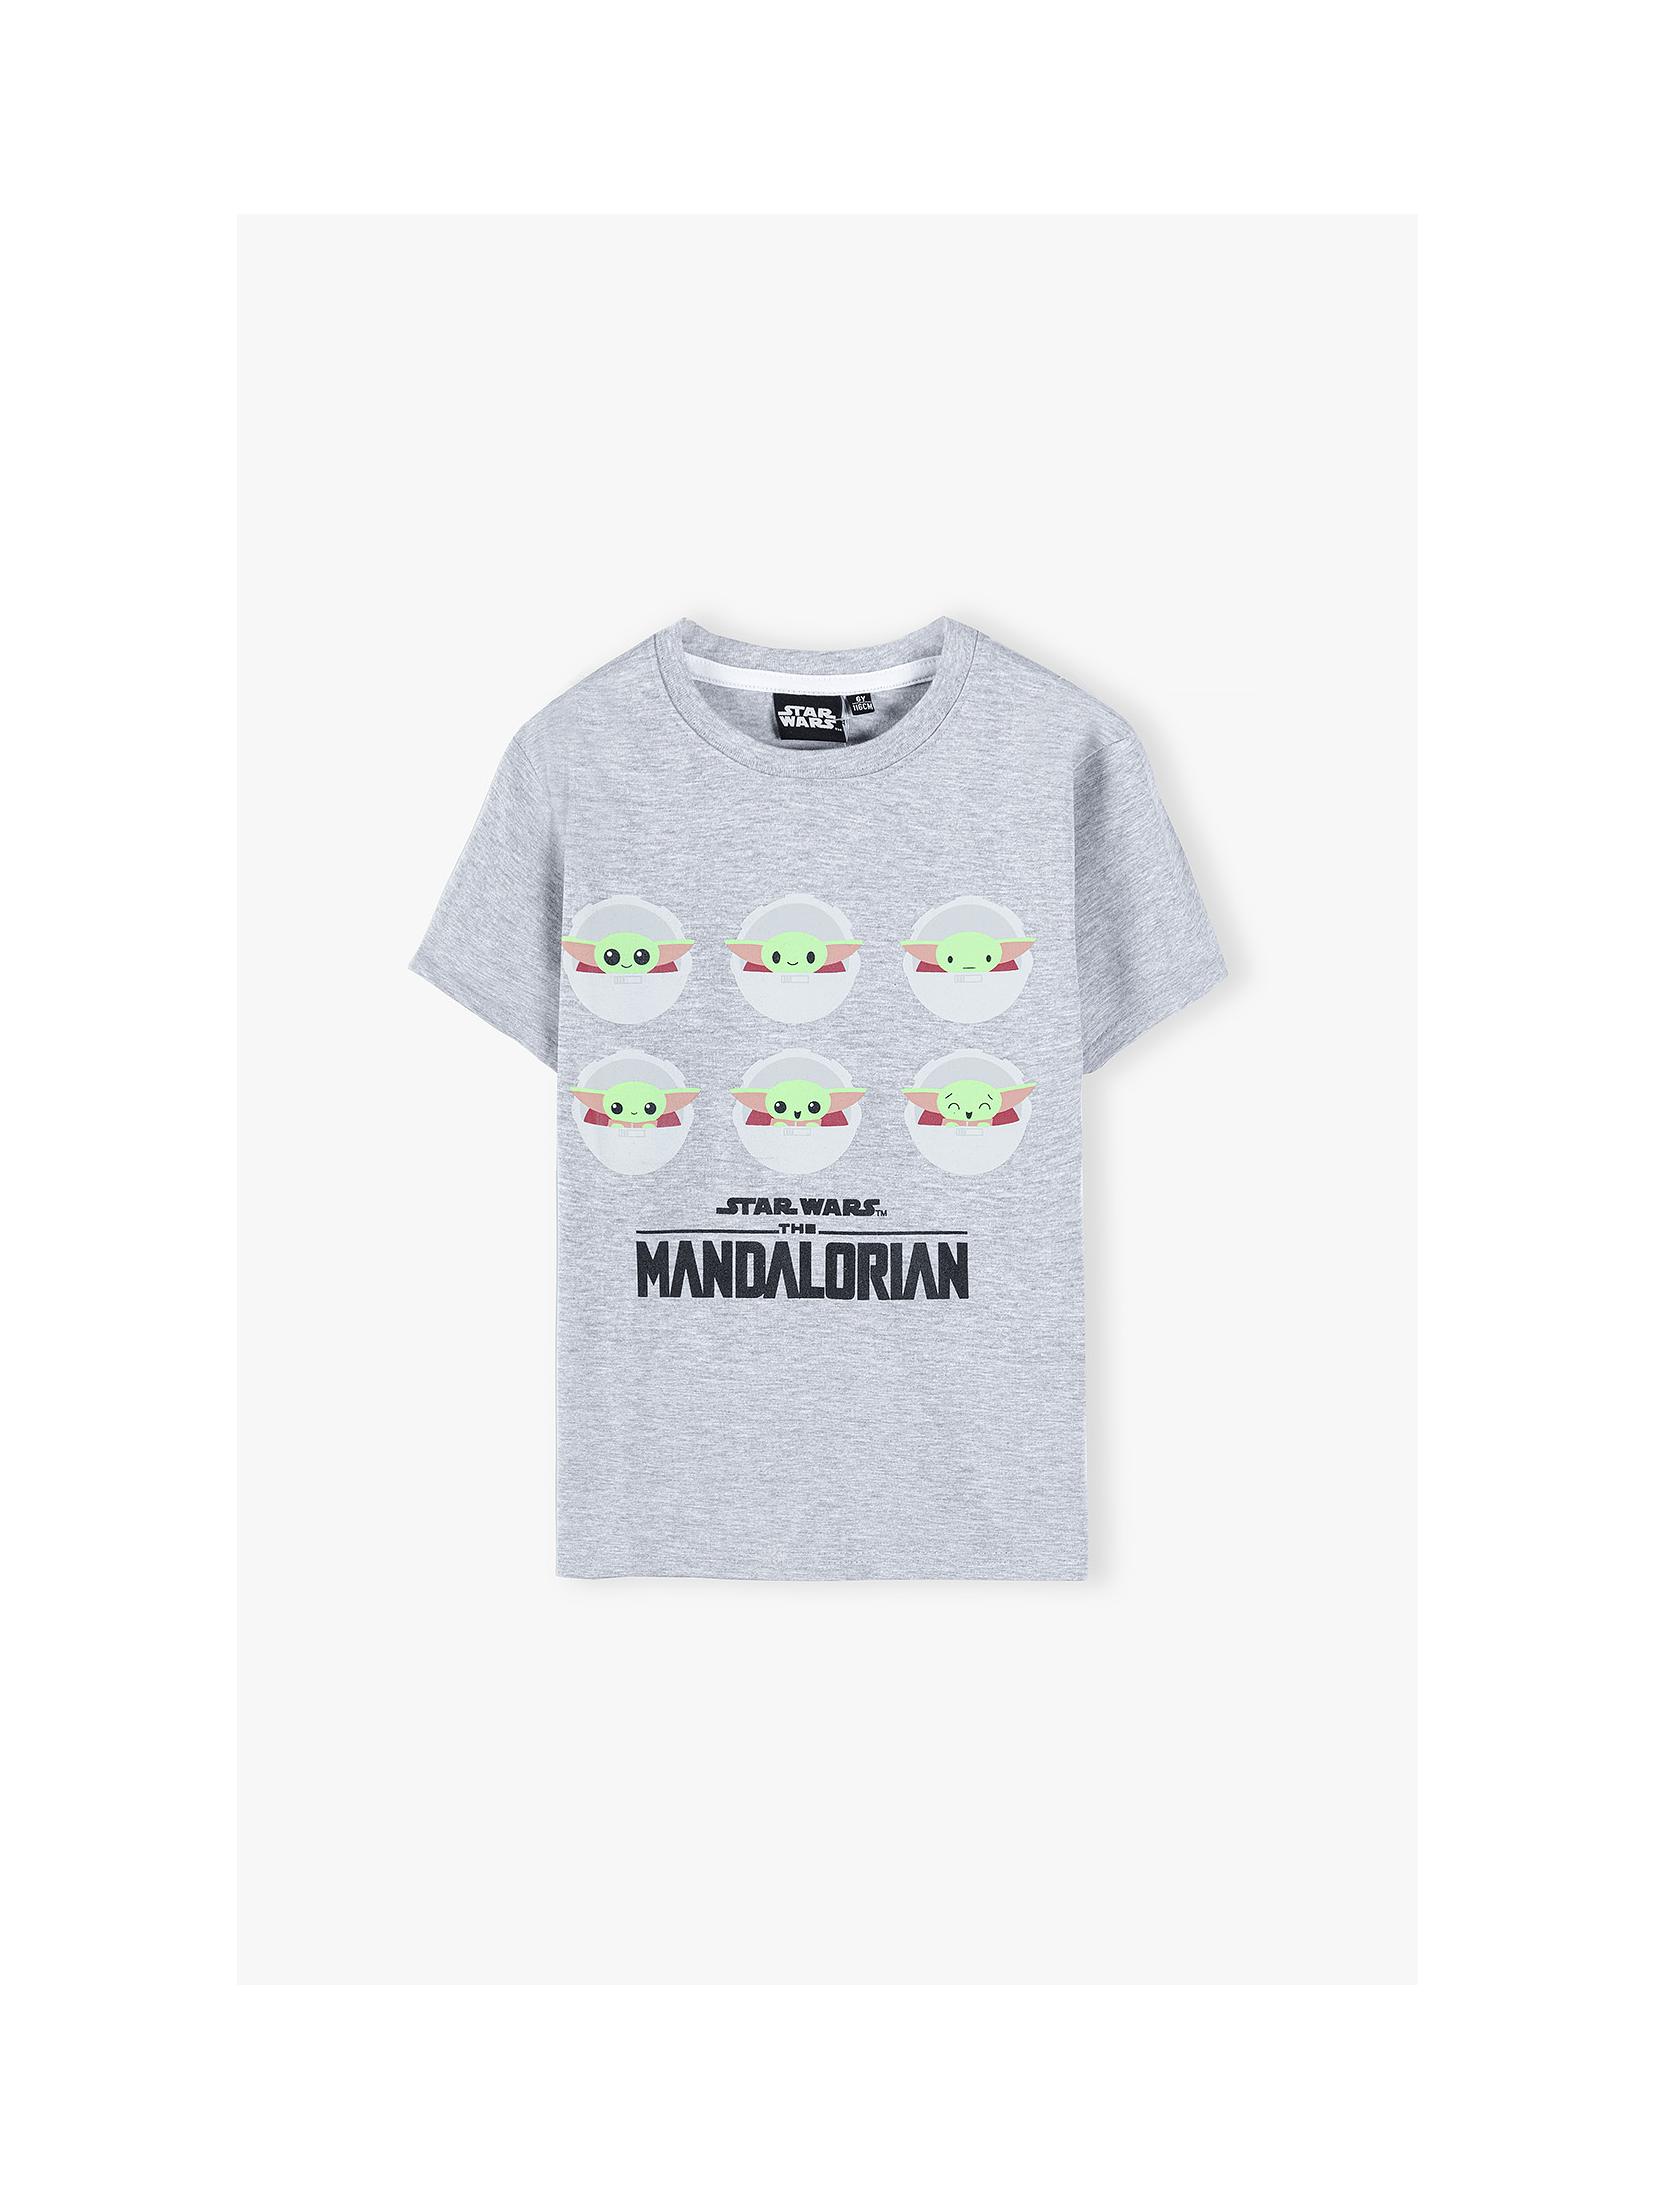 Bawełniana koszulka z krótkim rękawem, Mandalorian